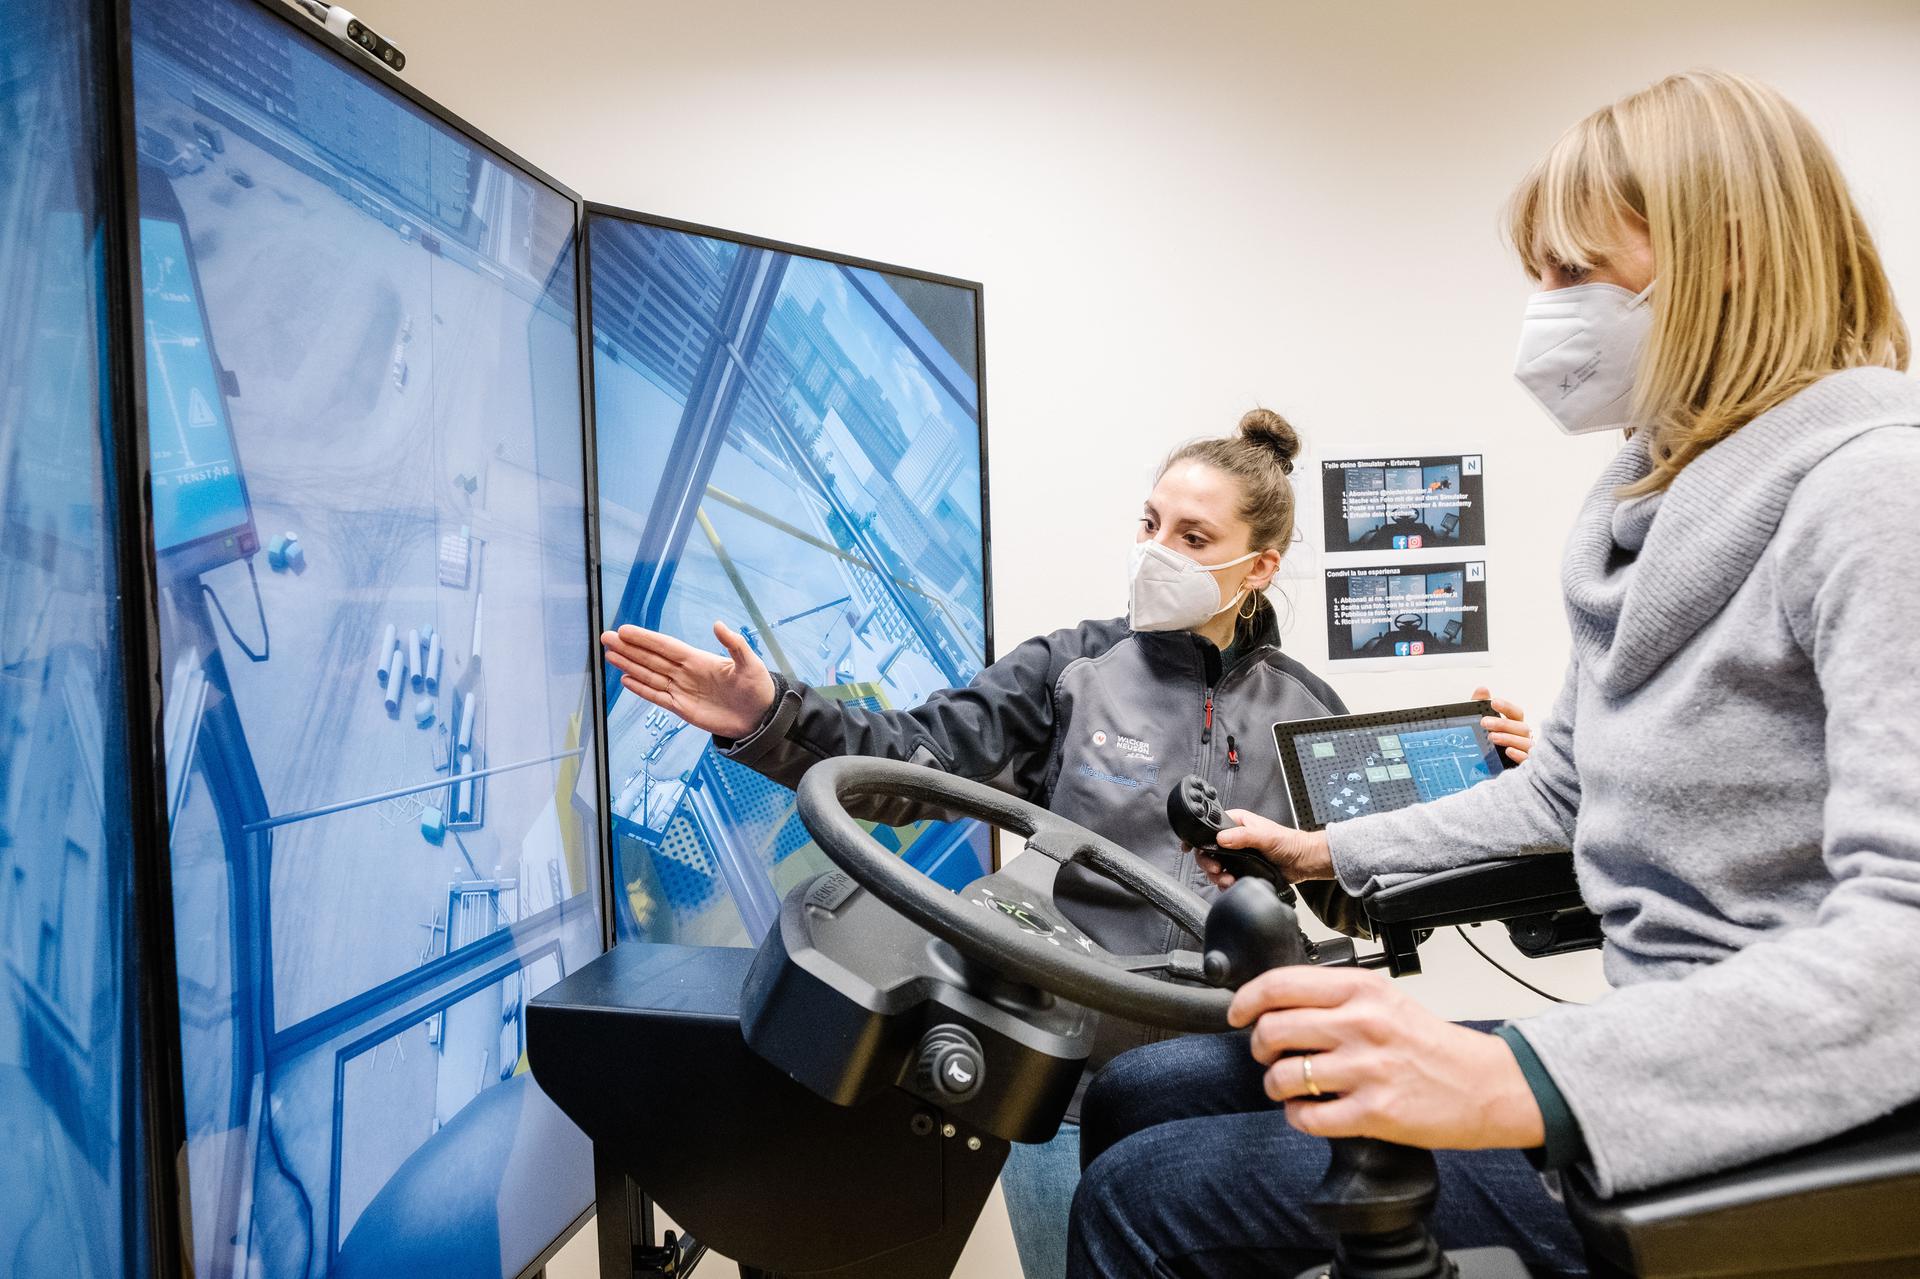 Simulatori ed esoscheletri, l'innovazione entra nei cantieri con  Niederstätter